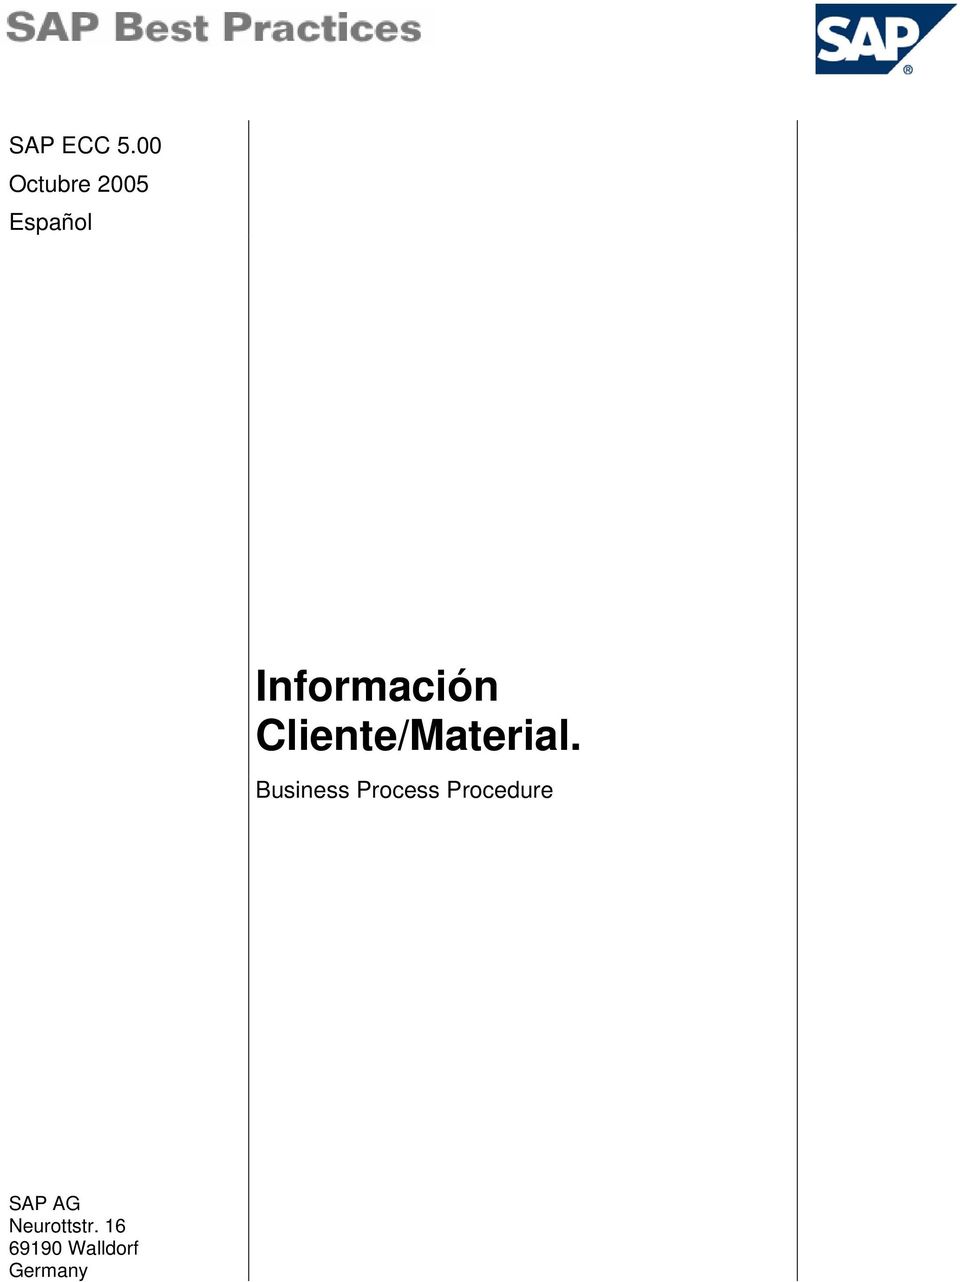 Información Cliente/Material.